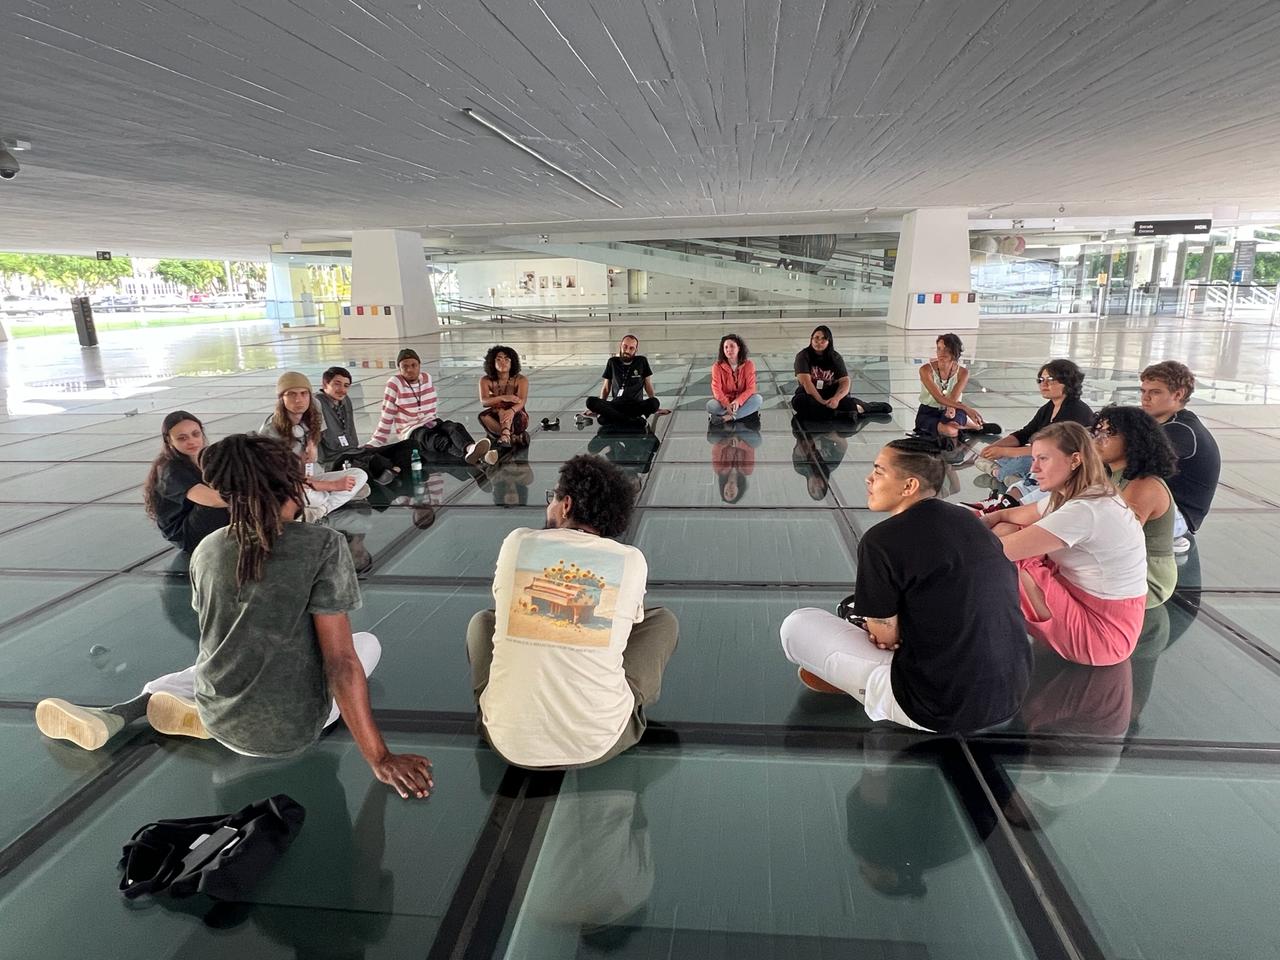 À equipe educativa do Museu Oscar Niemeyer